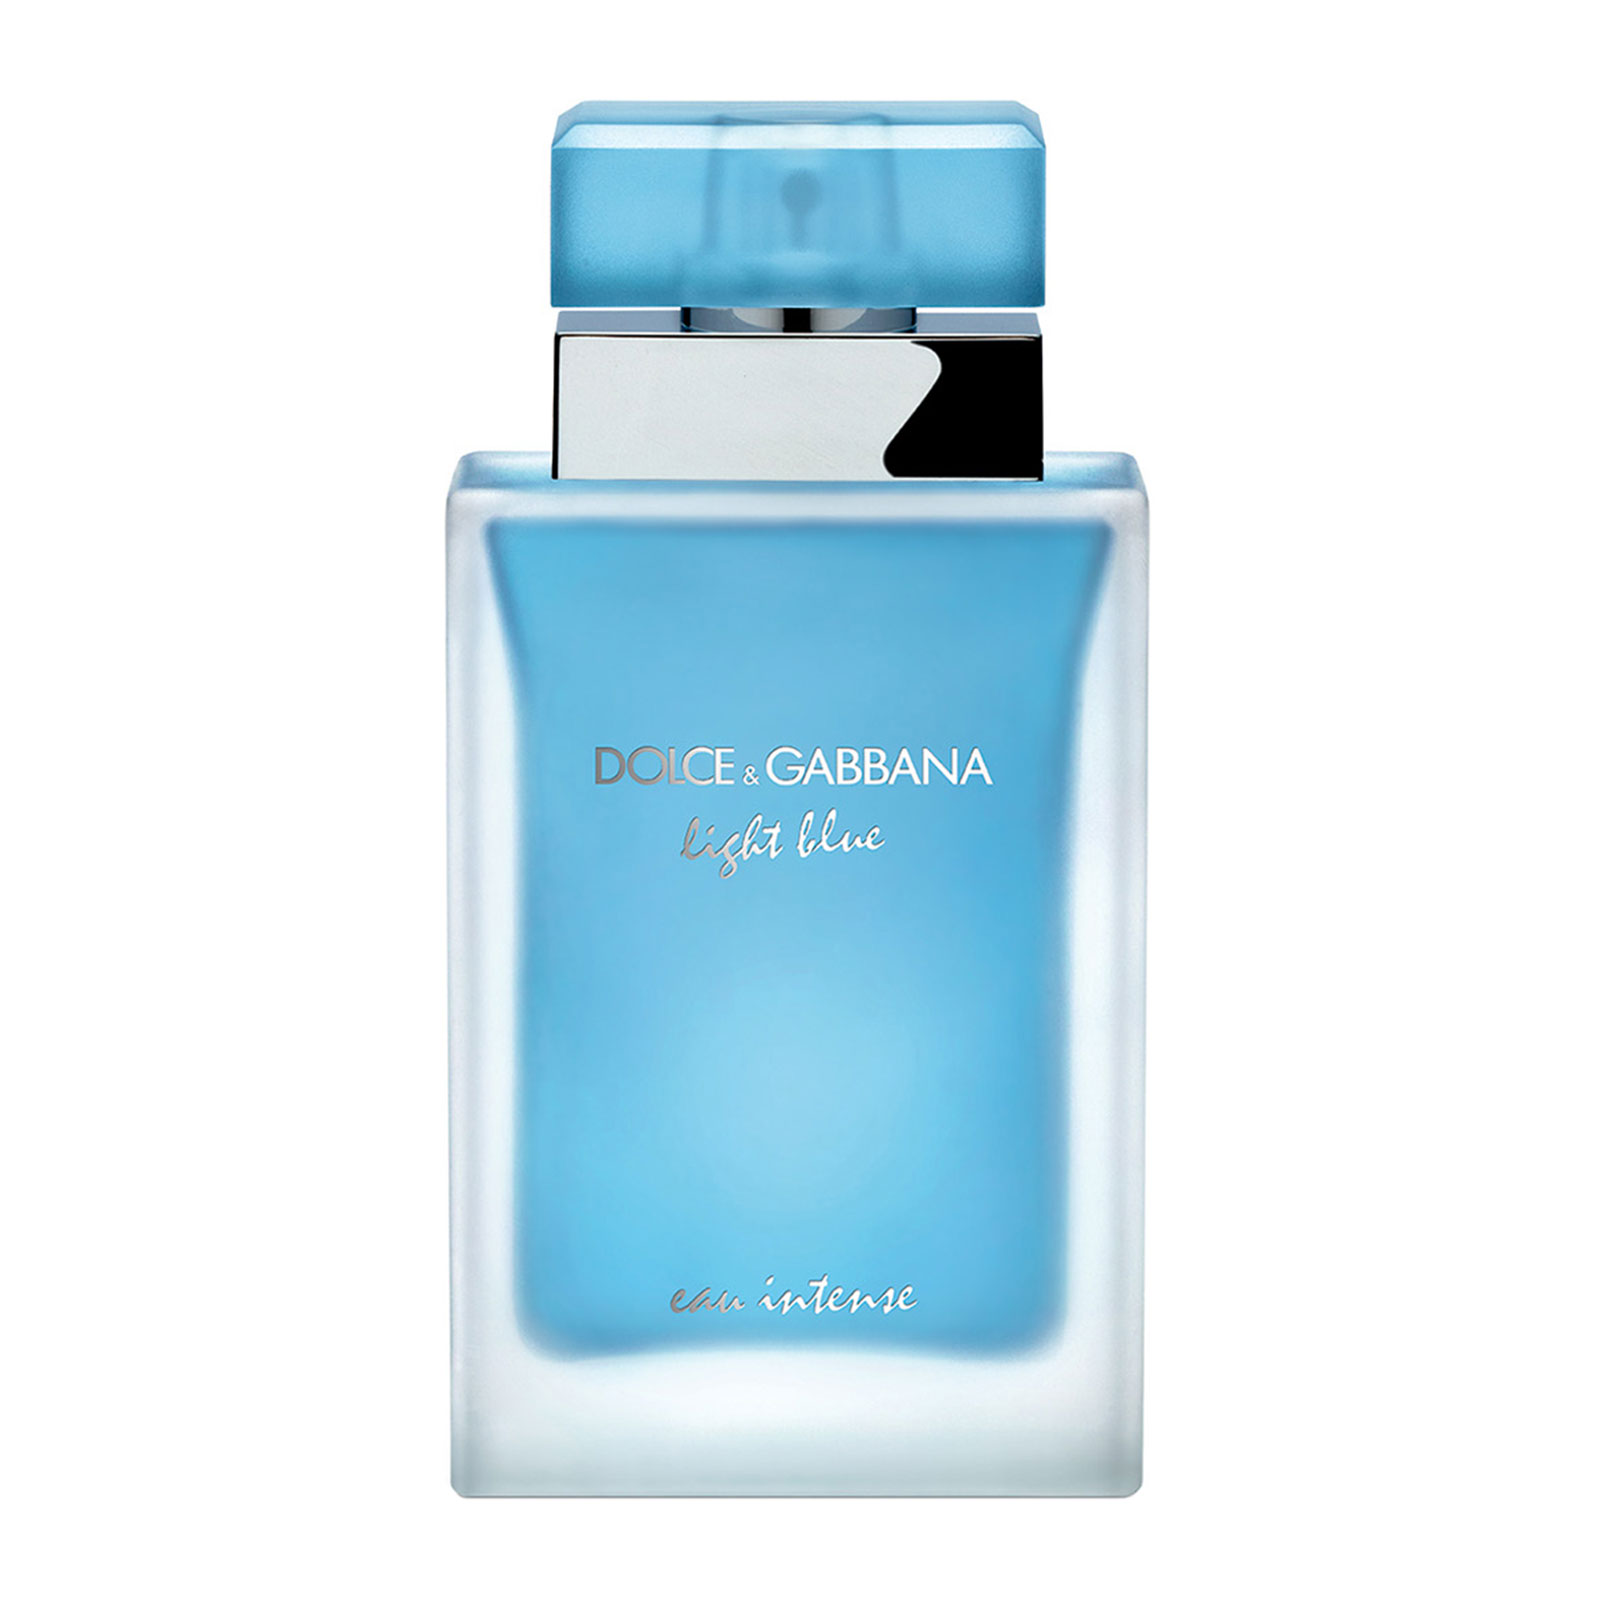 Dolce & gabbana light blue eau intense 50ml